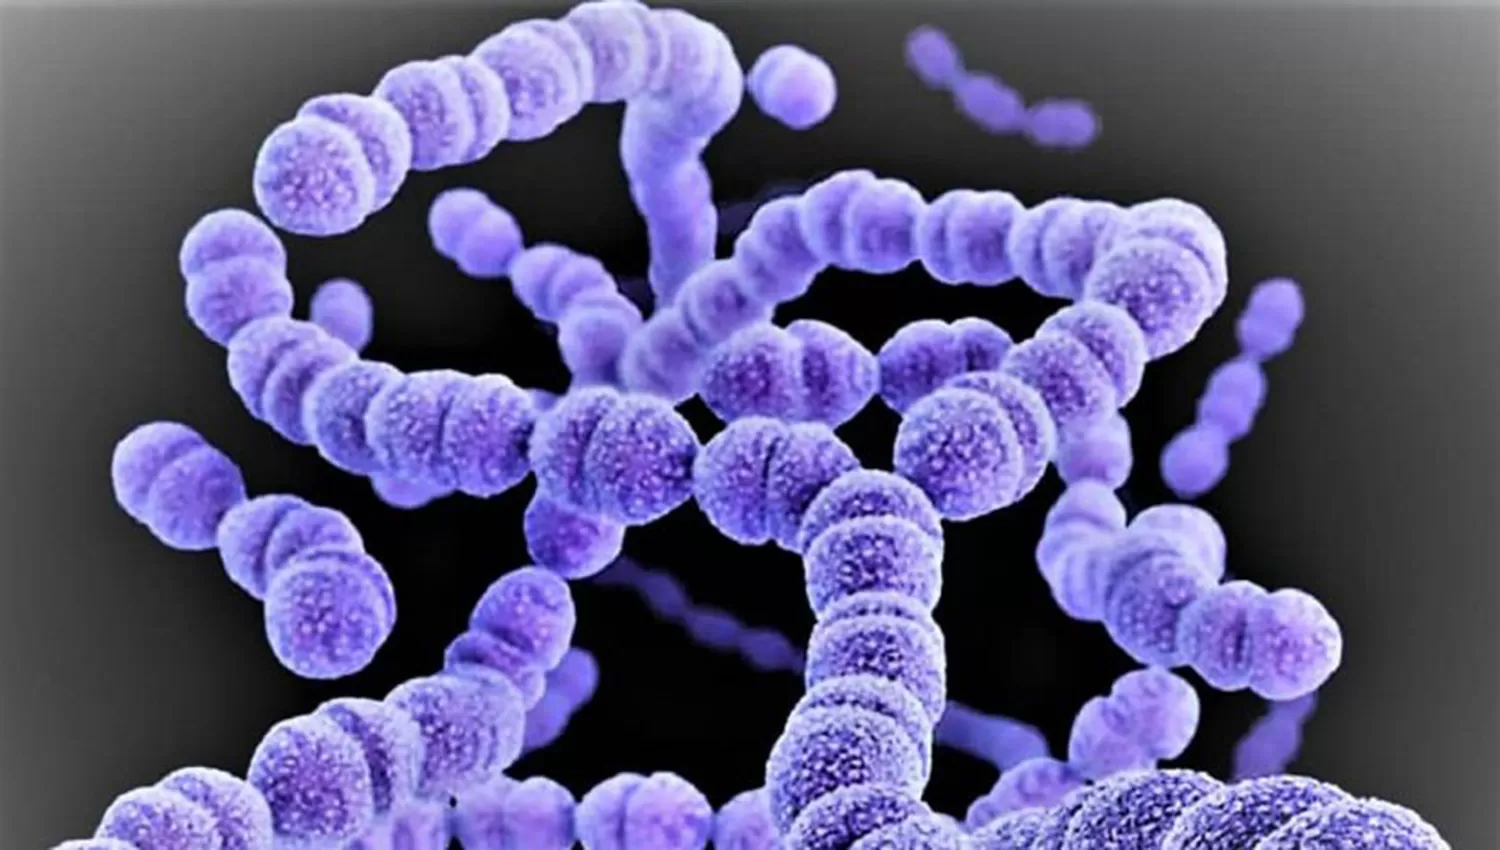 Suman tres muertos por la bacteria estreptococo y ya son 10 las víctimas fatales